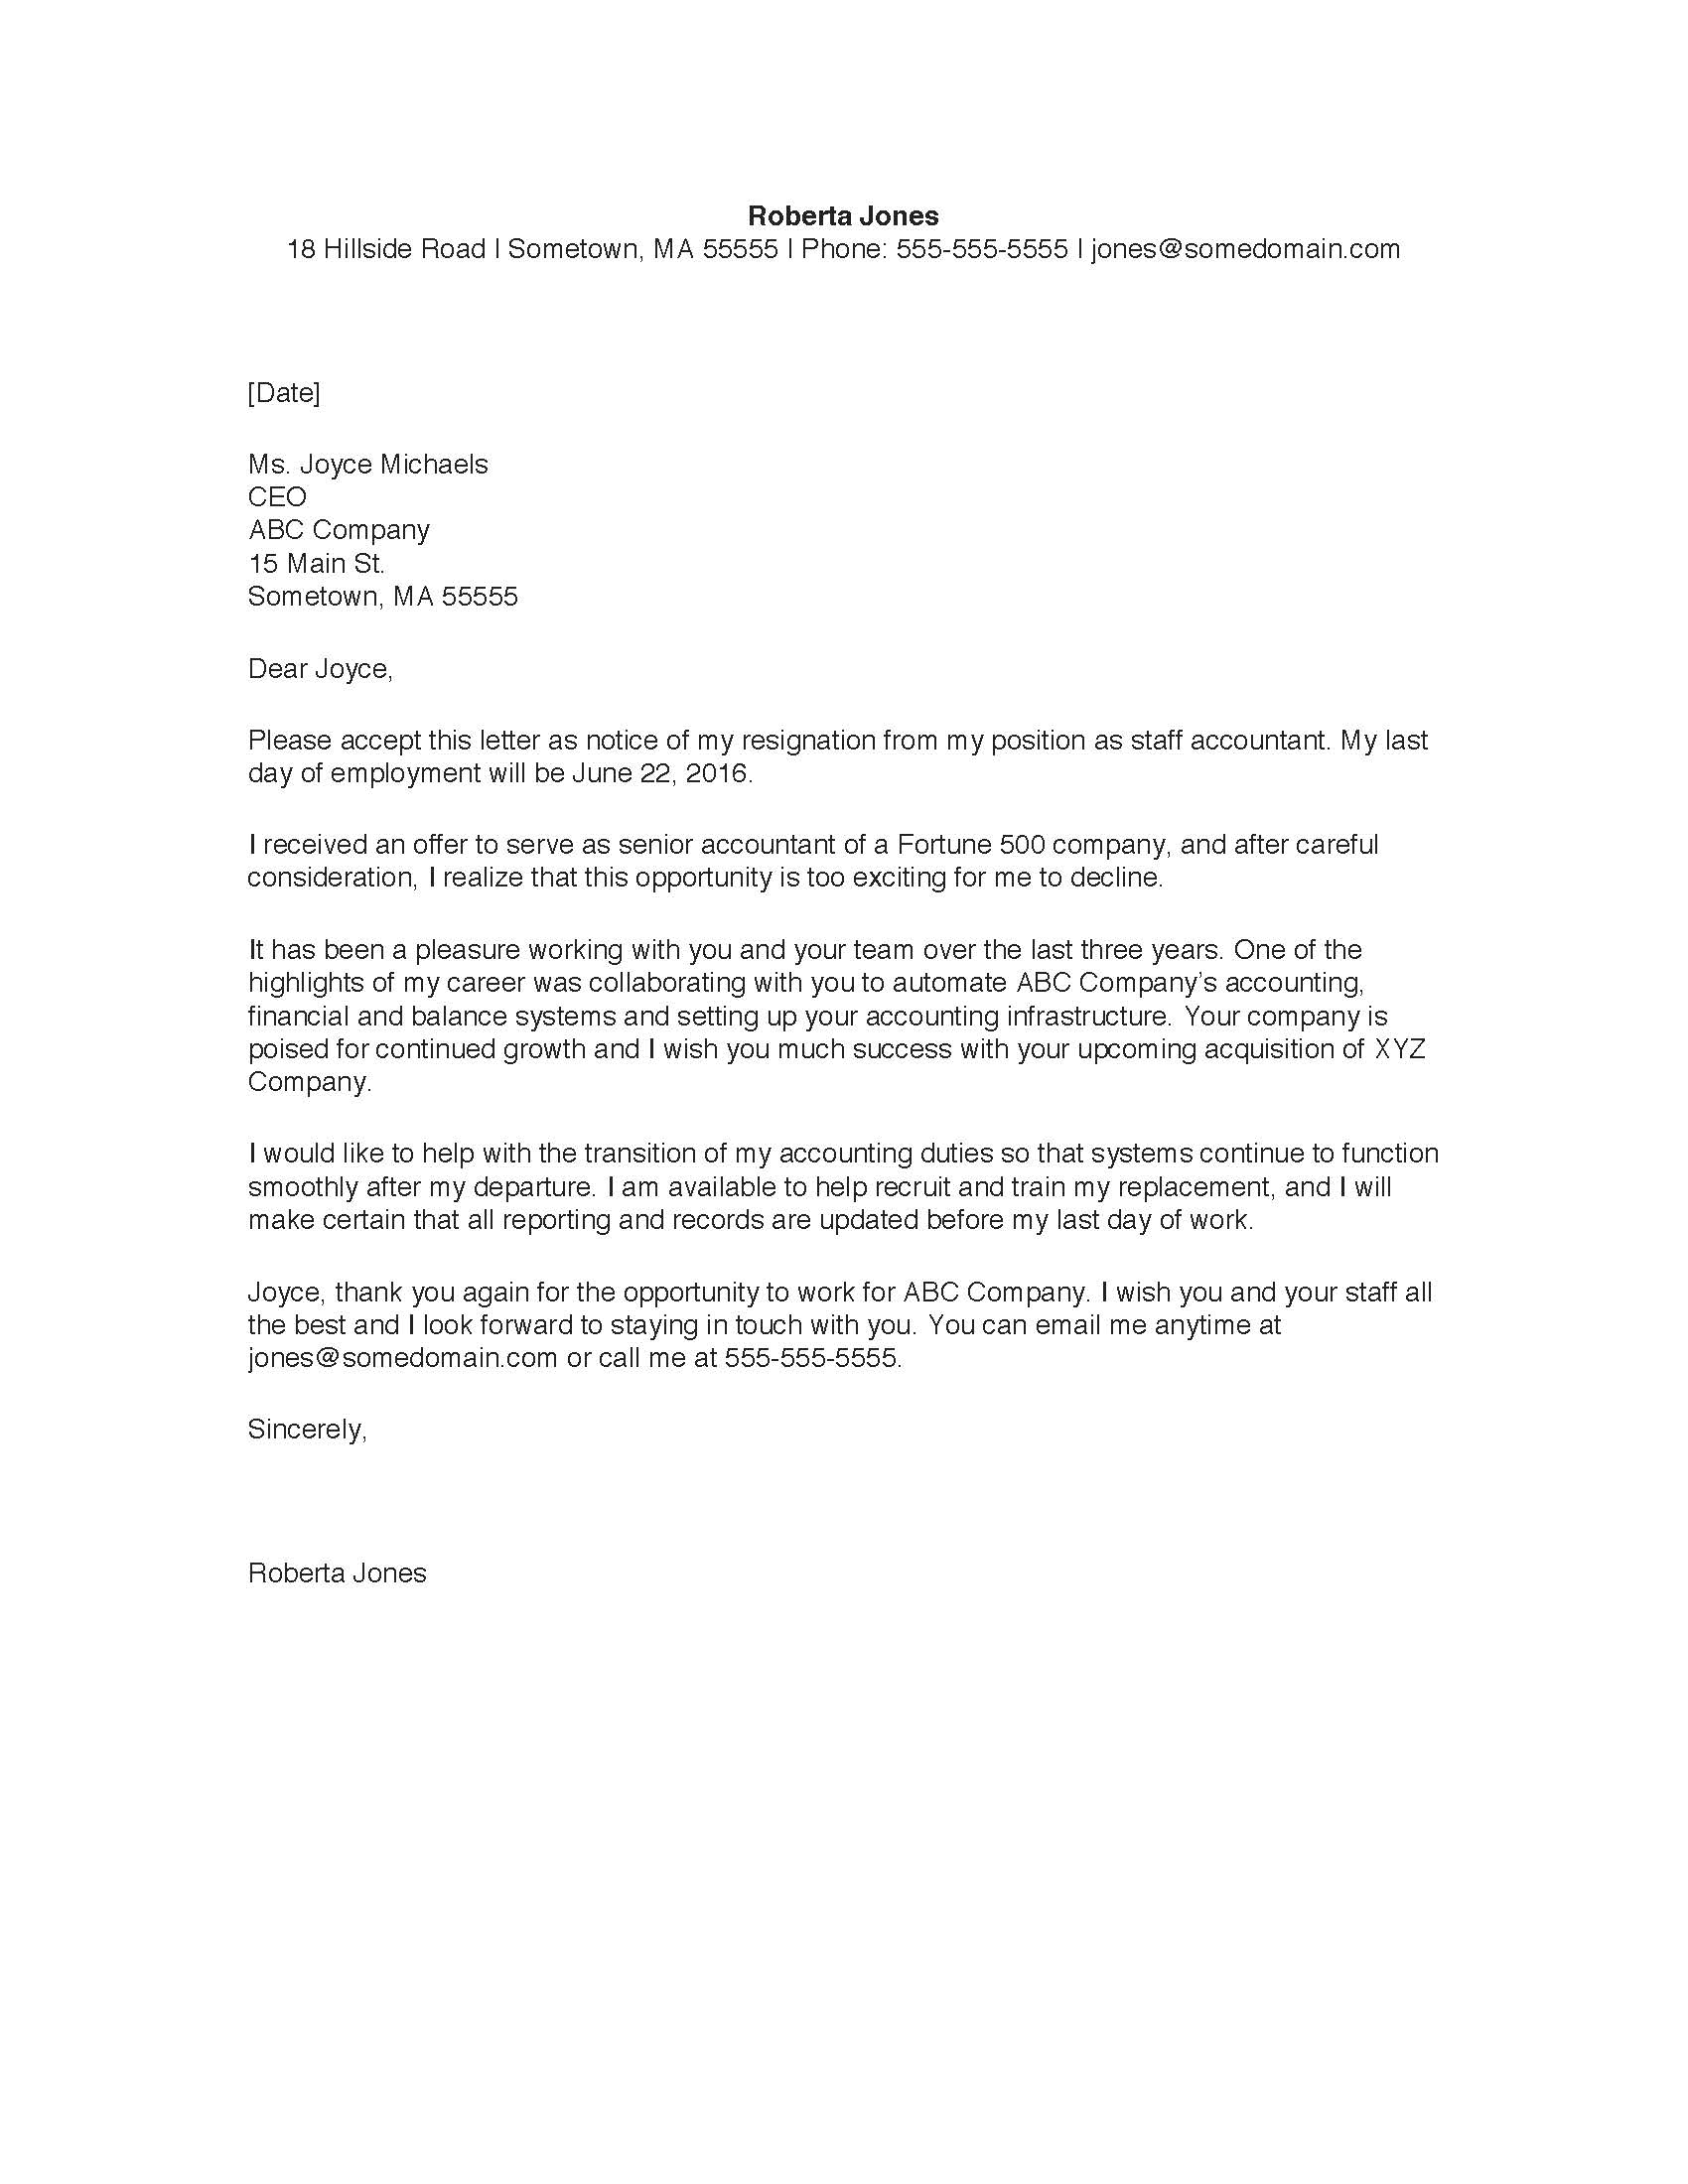 Sample resignation letter